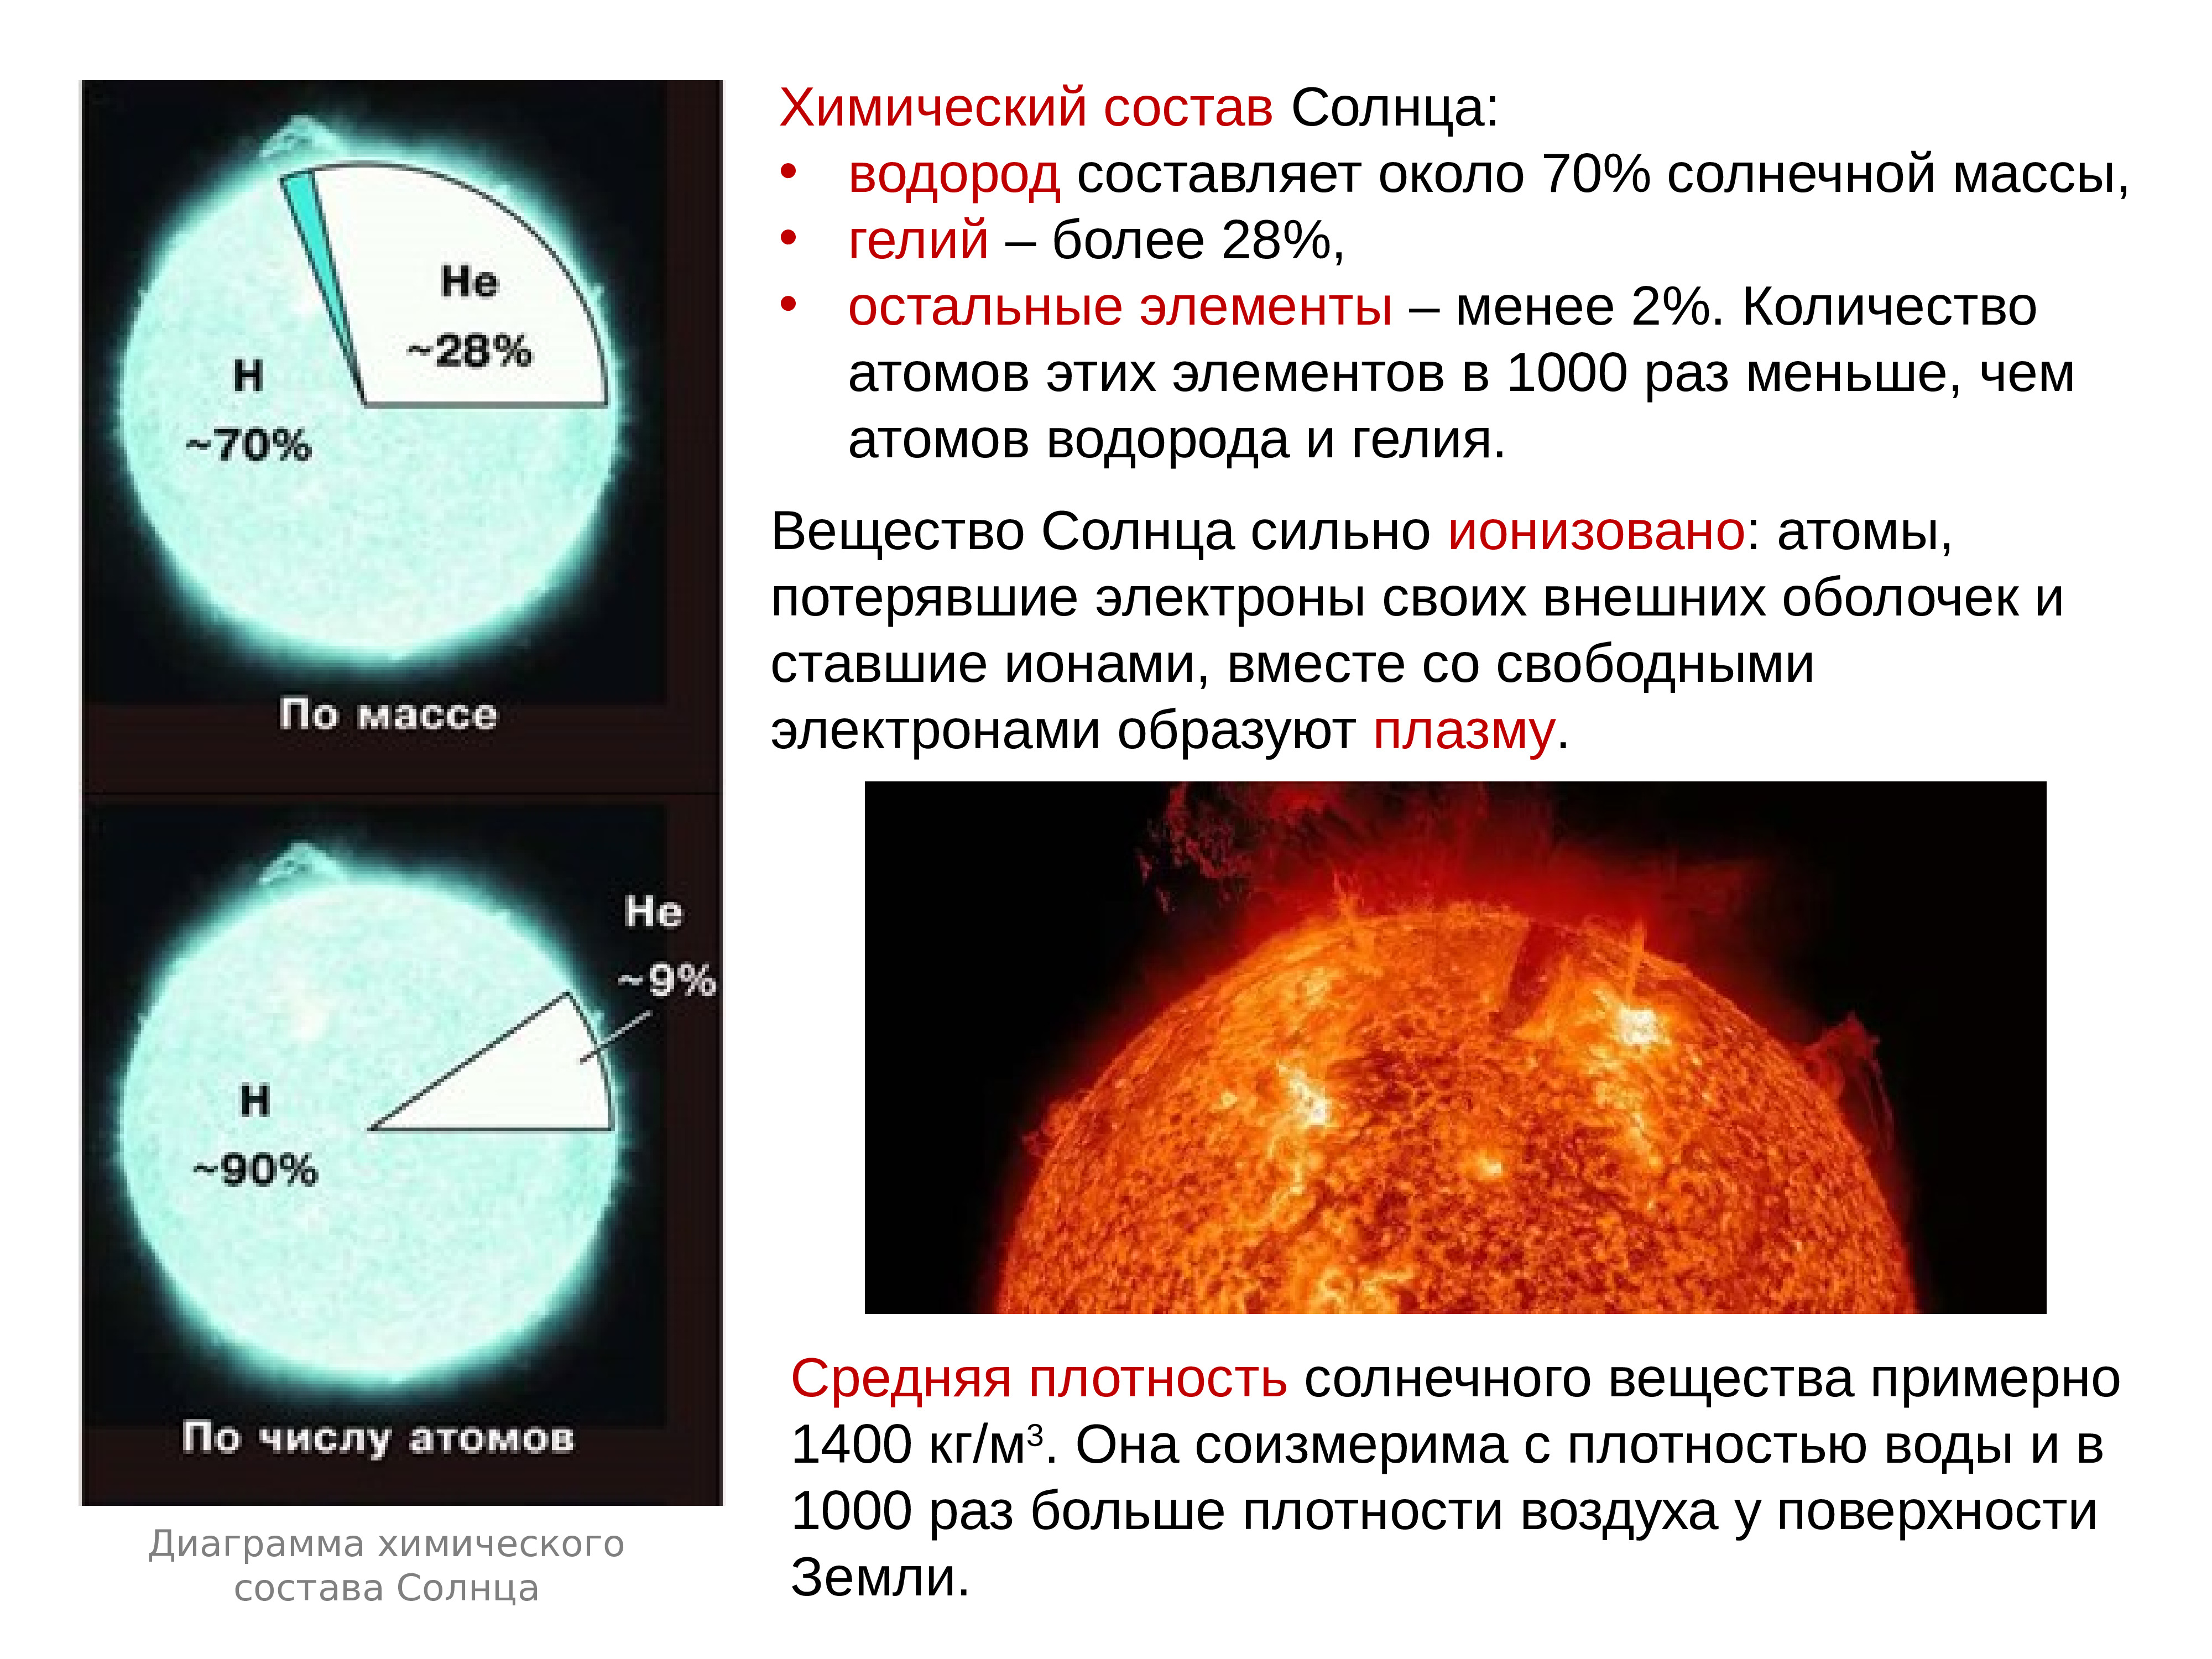 Химический состав внешних слоев солнца